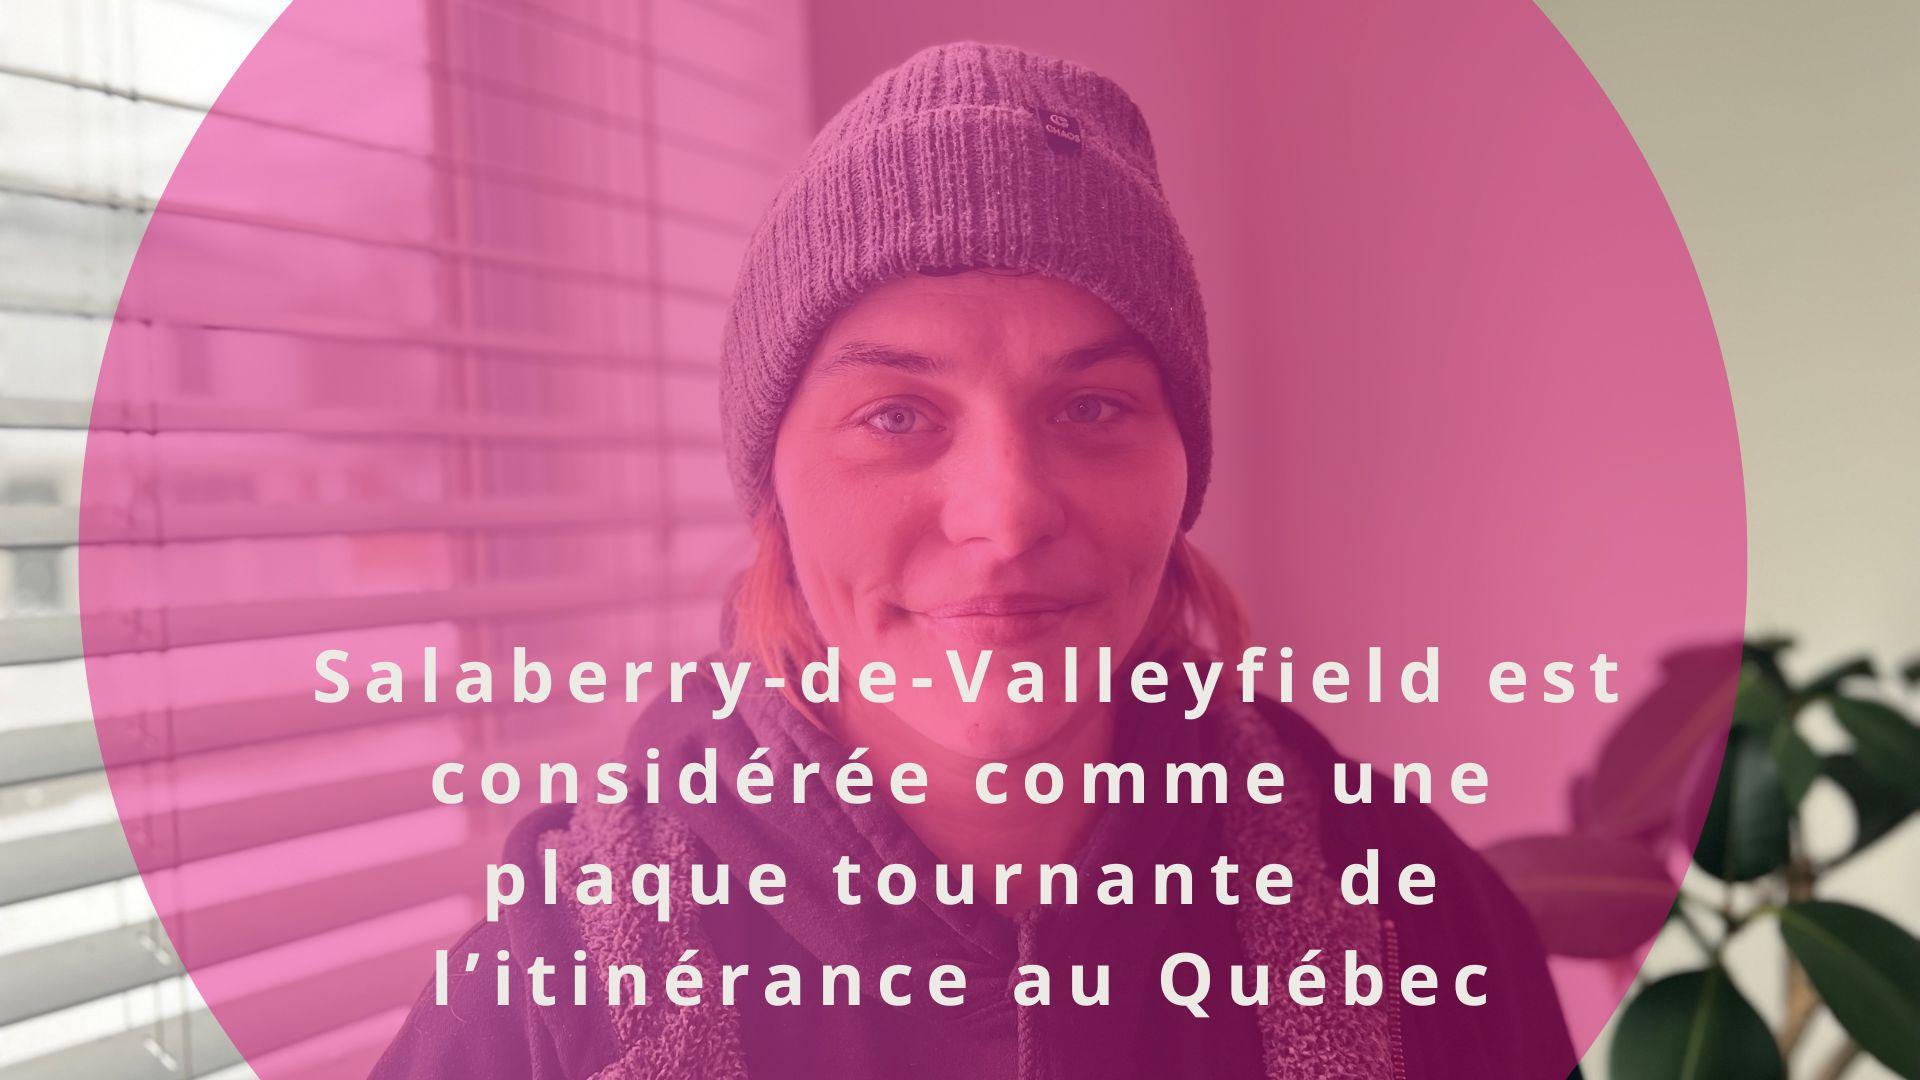 Salaberry-de-Valleyfield-est-considérée-comme-une-plaque-tournante-de-l’itinérance-au-Québec-3.jpg#asset:3043